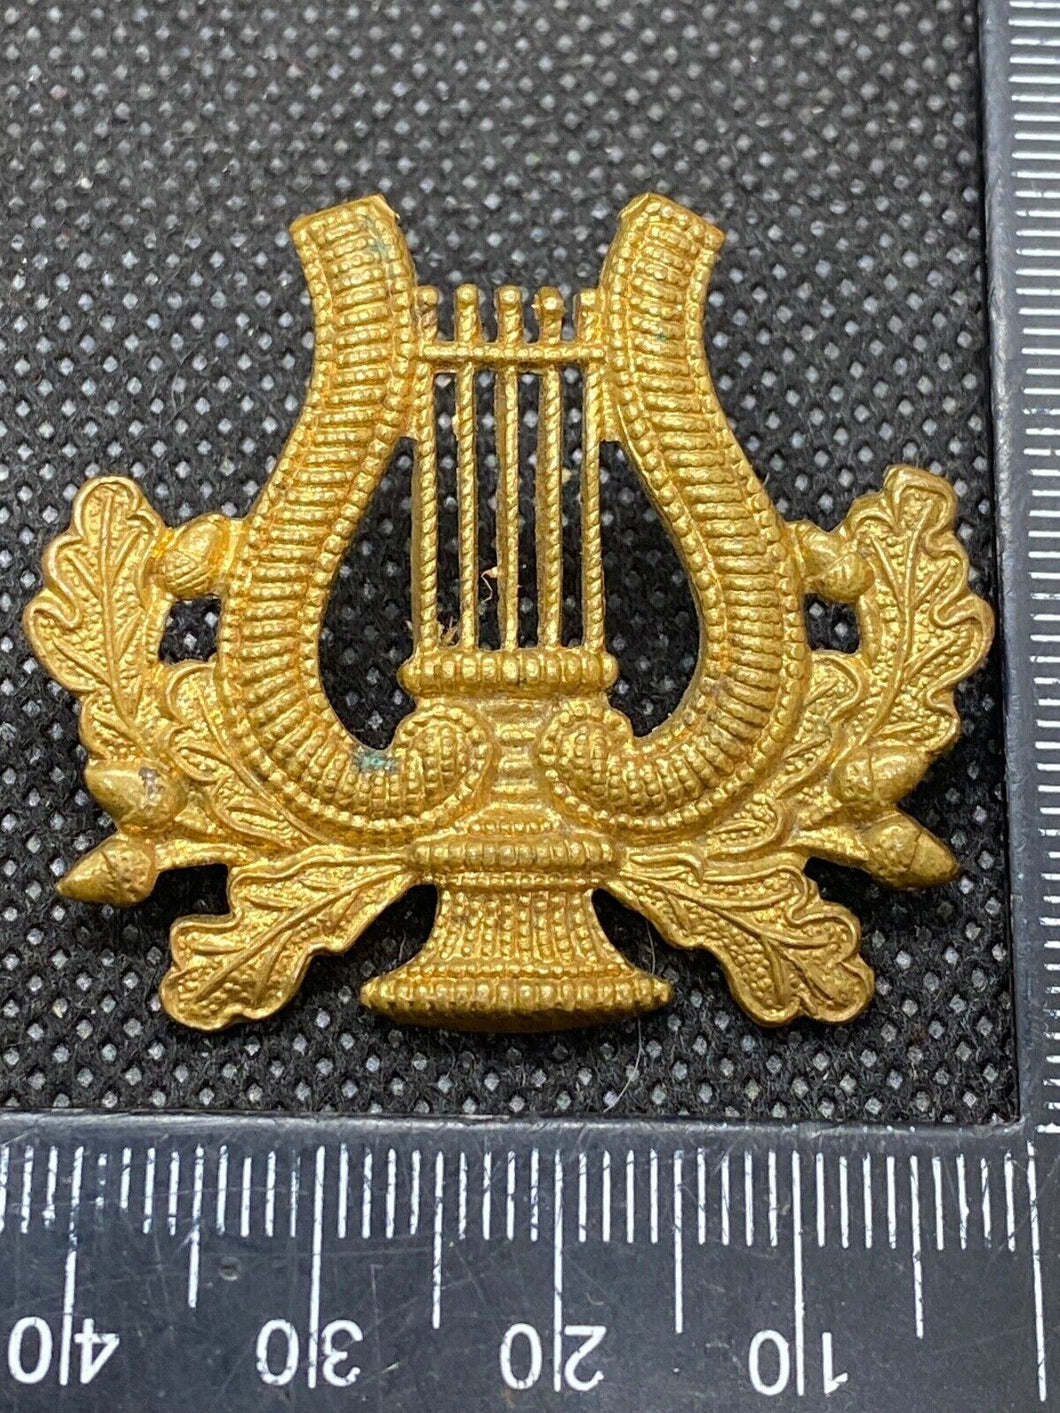 Original British Army Musicians Cap / Collar Badge